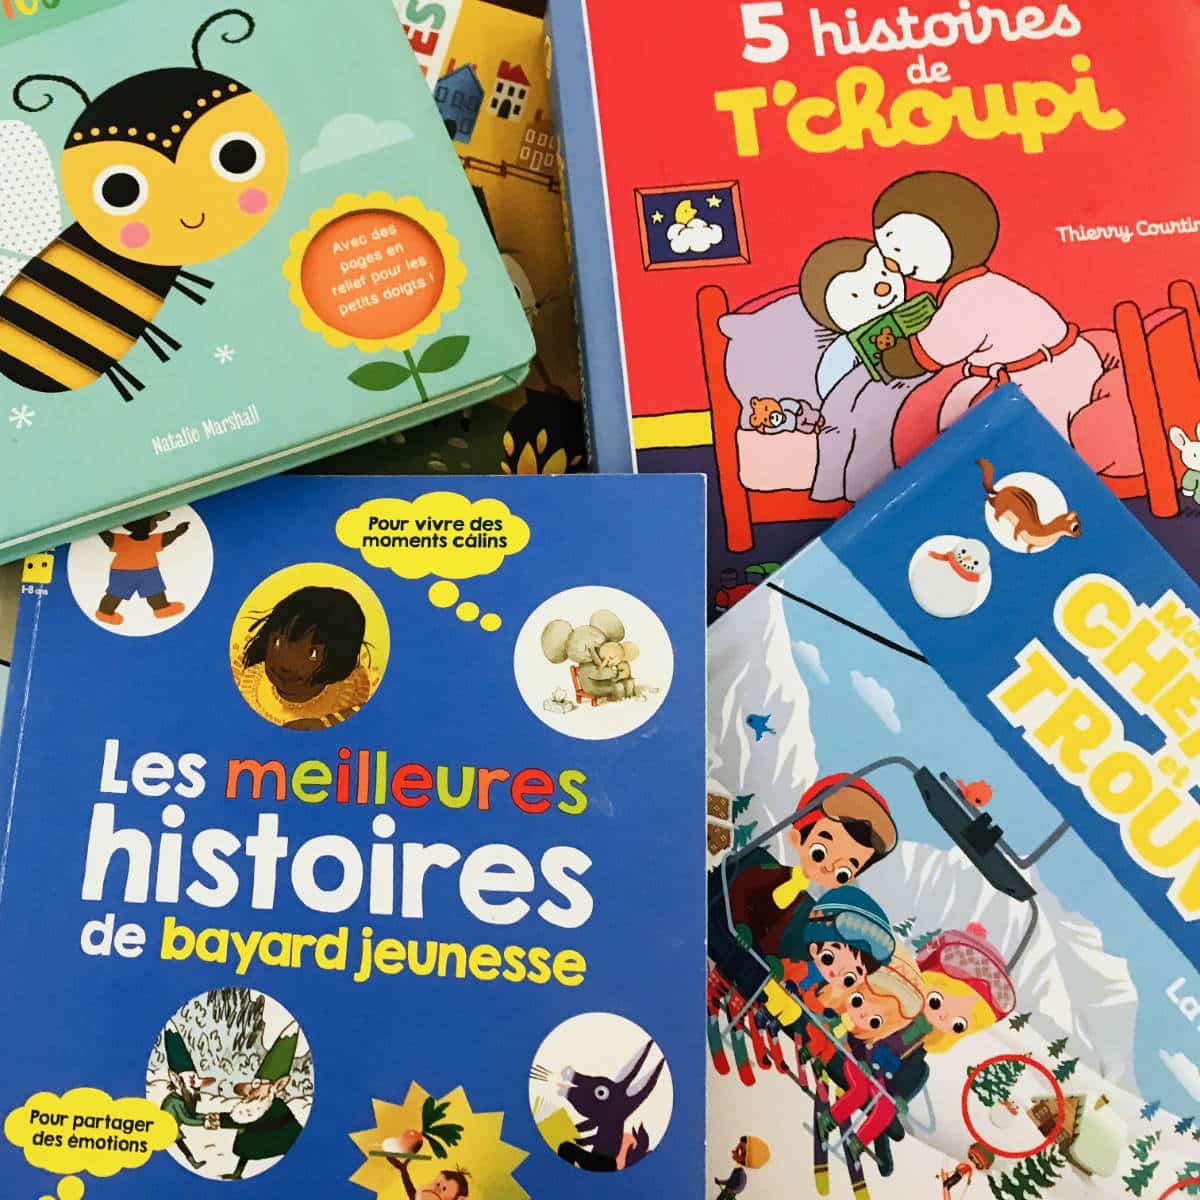 Ανάγνωση Γαλλικού παραμυθιού κάθε Τετάρτη απόγευμα στη Βιβλιοθήκη Καλαμπάκας